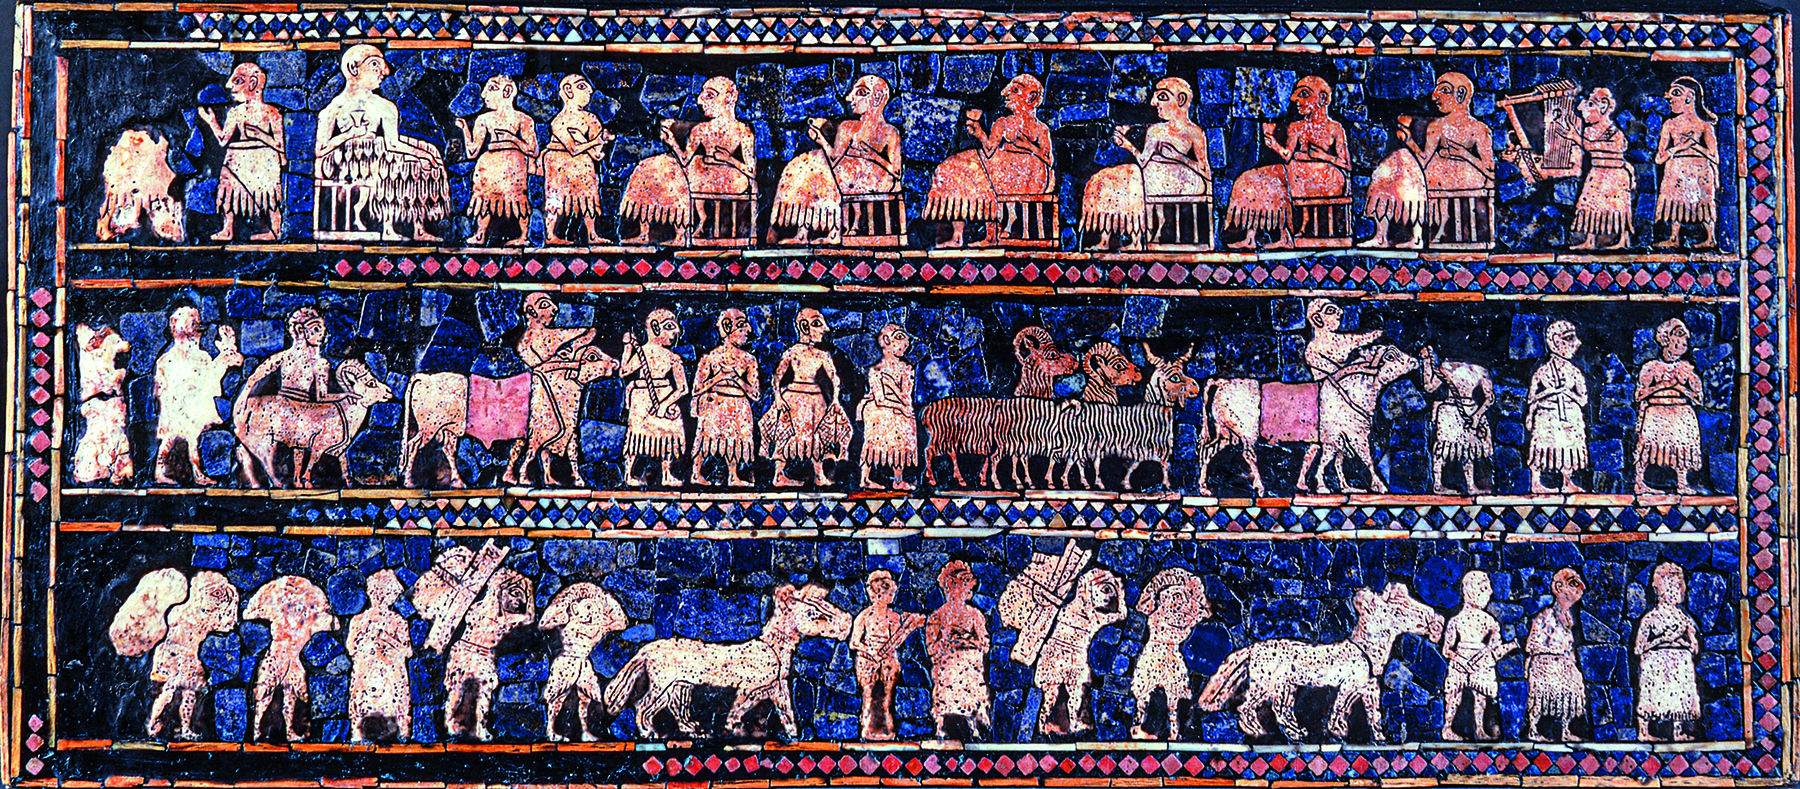 Fotografia. Mosaico retangular, azul-escuro, com desenhos em bege-claro divididos em três fileiras. Na primeira fileira de baixo para cima, homens em pé, virados para a direita, carregando sacos, feixes e conduzindo cavalos. Na segunda fileira, todos os homens em pé, virados para a direita conduzindo carneiro, bois, bodes e cabras. Na terceira fileira, à esquerda, há um homem maior sentado virado para a direita, com dois homens em pé e diversos homens sentados virados em direção a ele; à direita, dois homens em pé, um deles segurando uma lira.